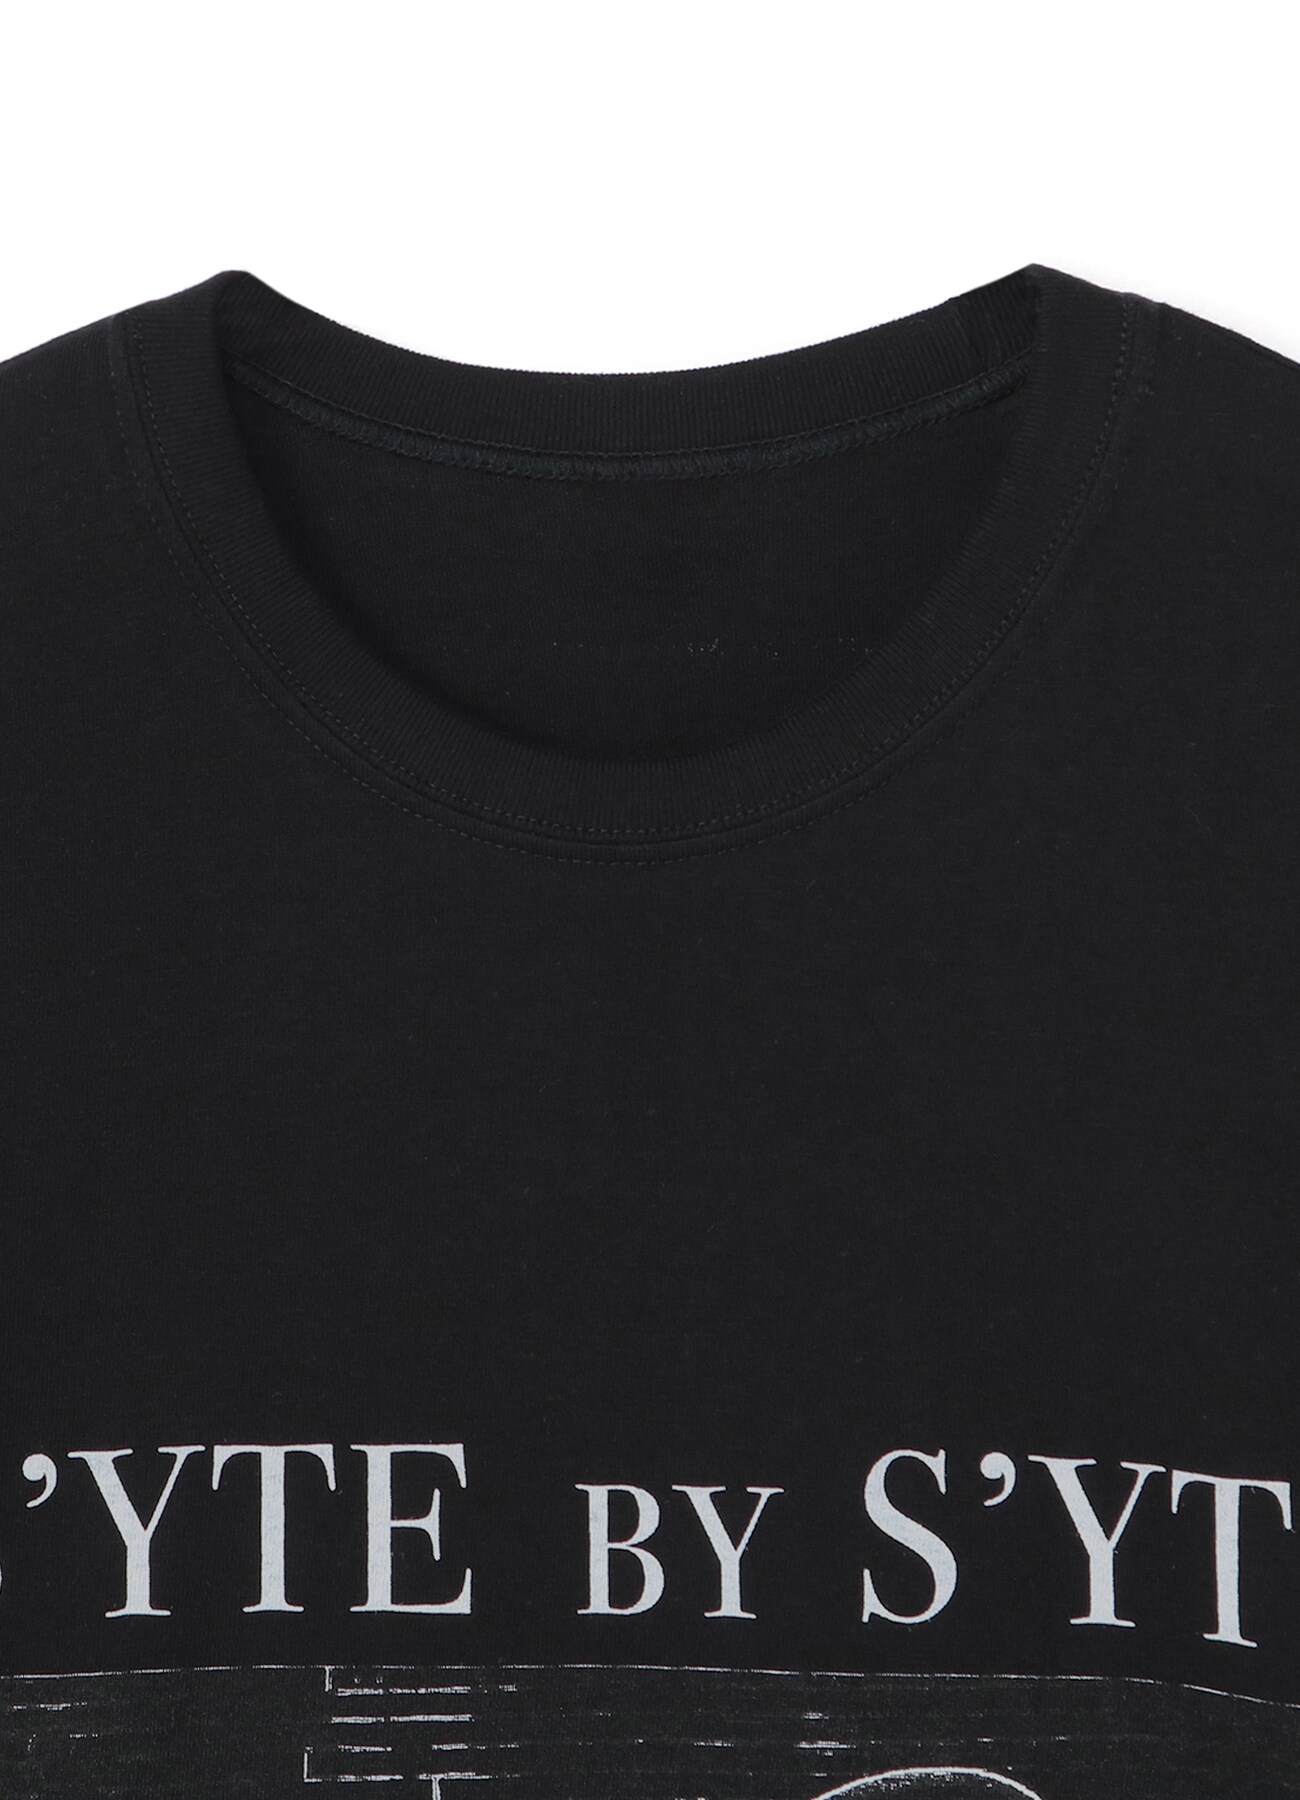 S’YTE 10TH「S’YTE BY S’YTE」Album Cover YY T-SHIRT